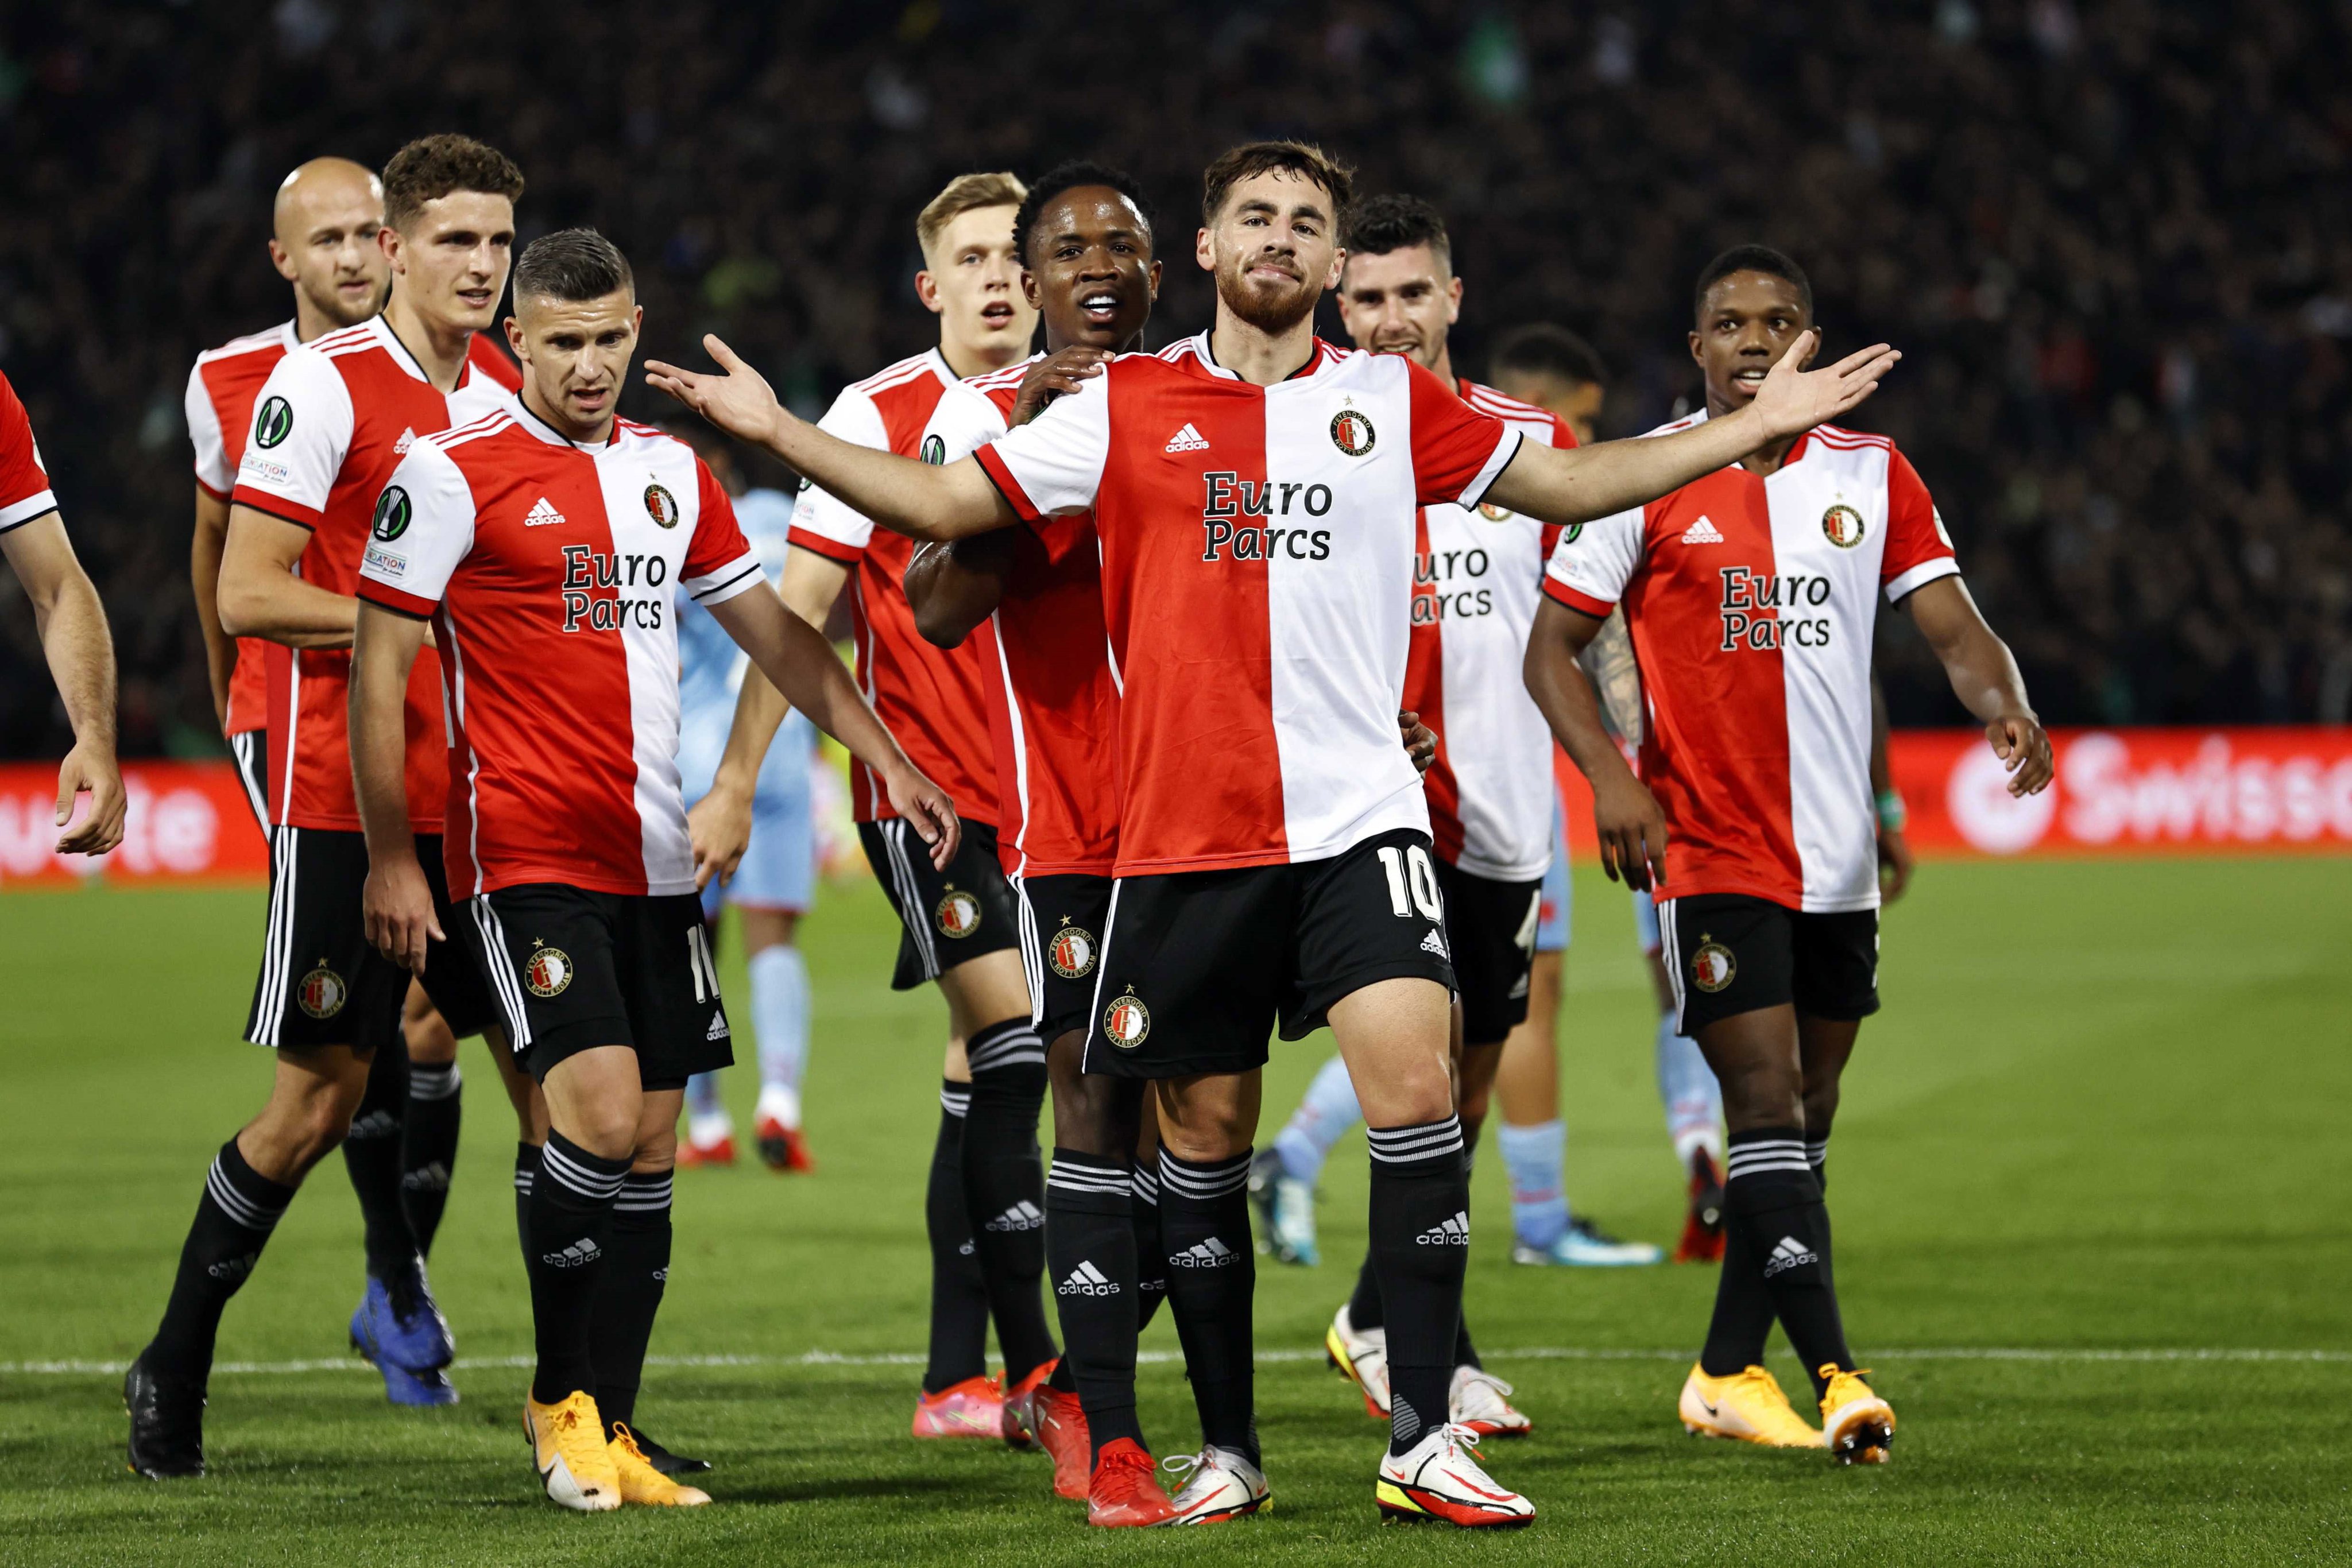 SportsCenter on Twitter: "#Video ¡Participación sudamericana en la victoria  del Feyenoord! Senesi y Sinisterra fueron titulares en el 2-1 contra Slavia  Praga en la #ConferenceLeague. ¡Reviví lo mejor! https://t.co/8gY7Ffbe28" /  Twitter